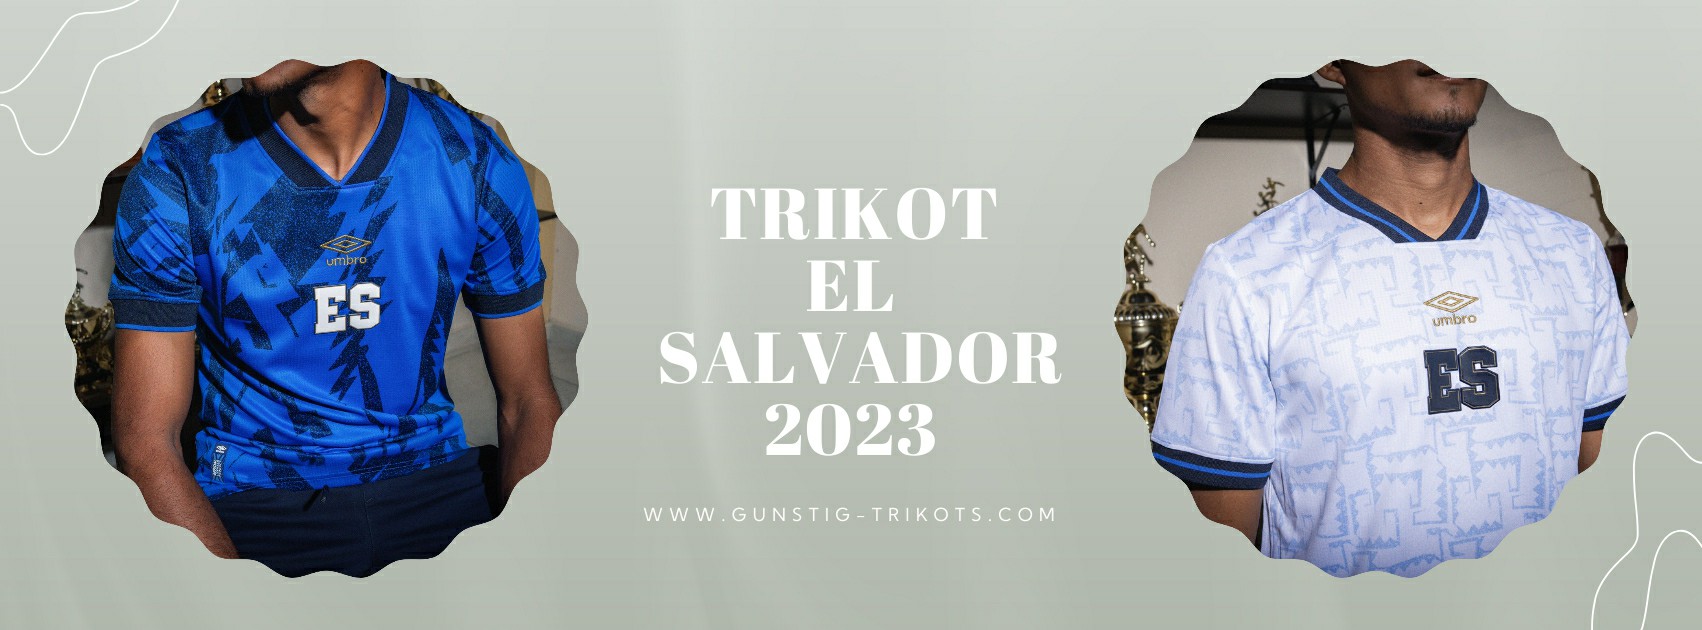 El Salvador Trikot 2023-2024